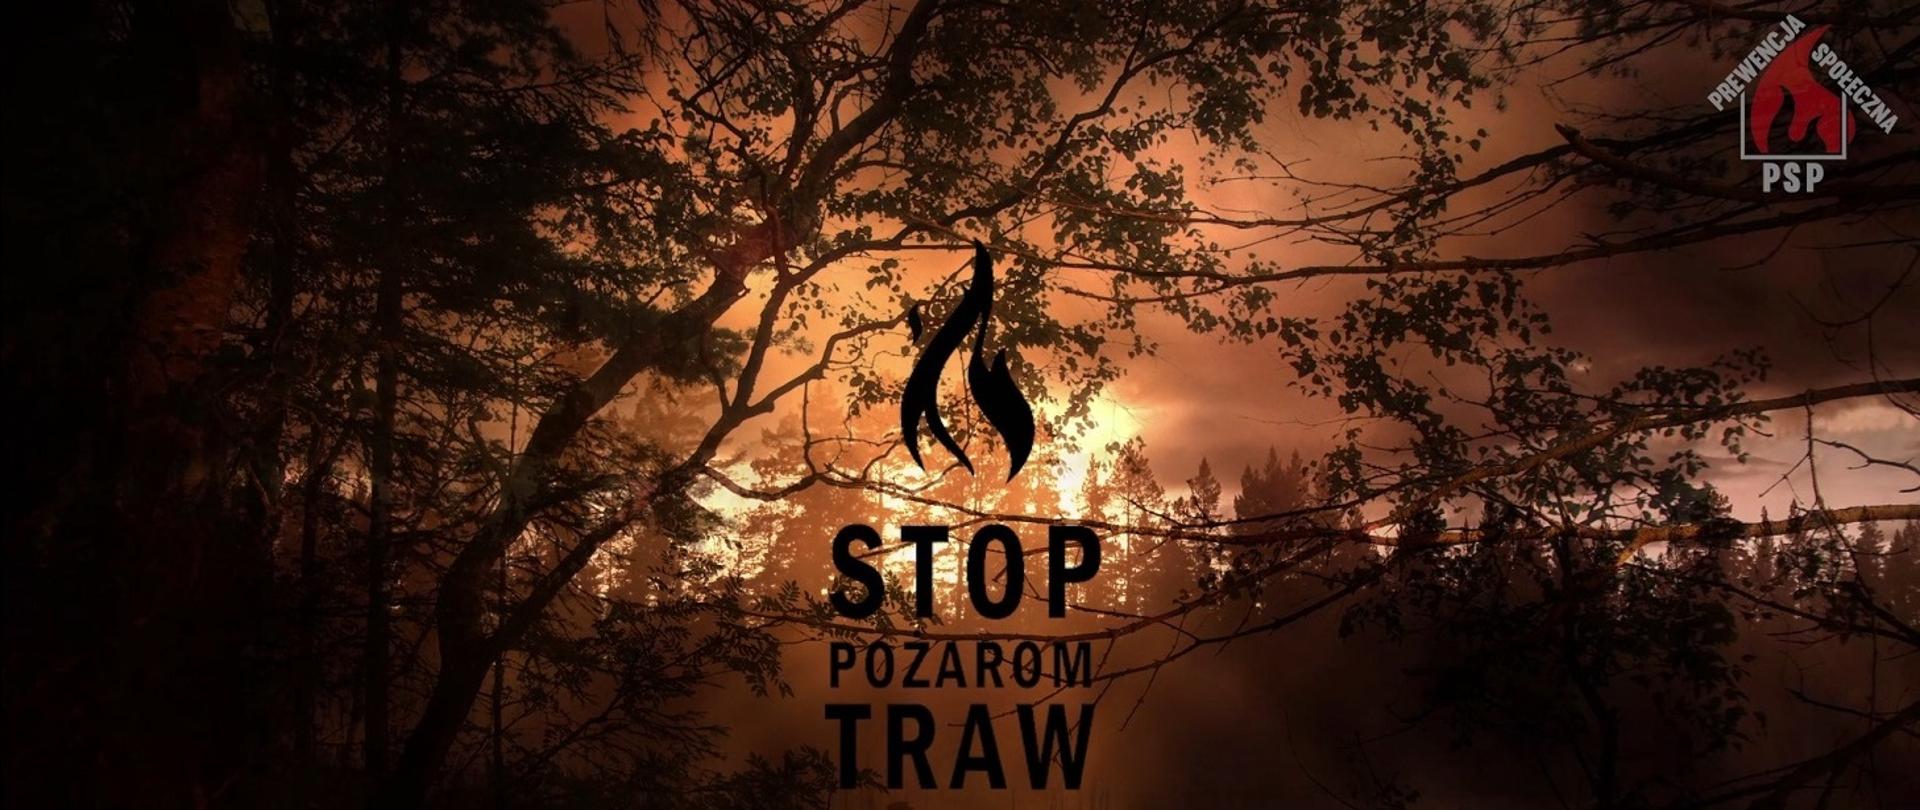 grafika przedstawia na tle płonącego lasu napis "Stop Pożarom Traw" . W prawym górnym rogu ikona prewencji społecznej PSP